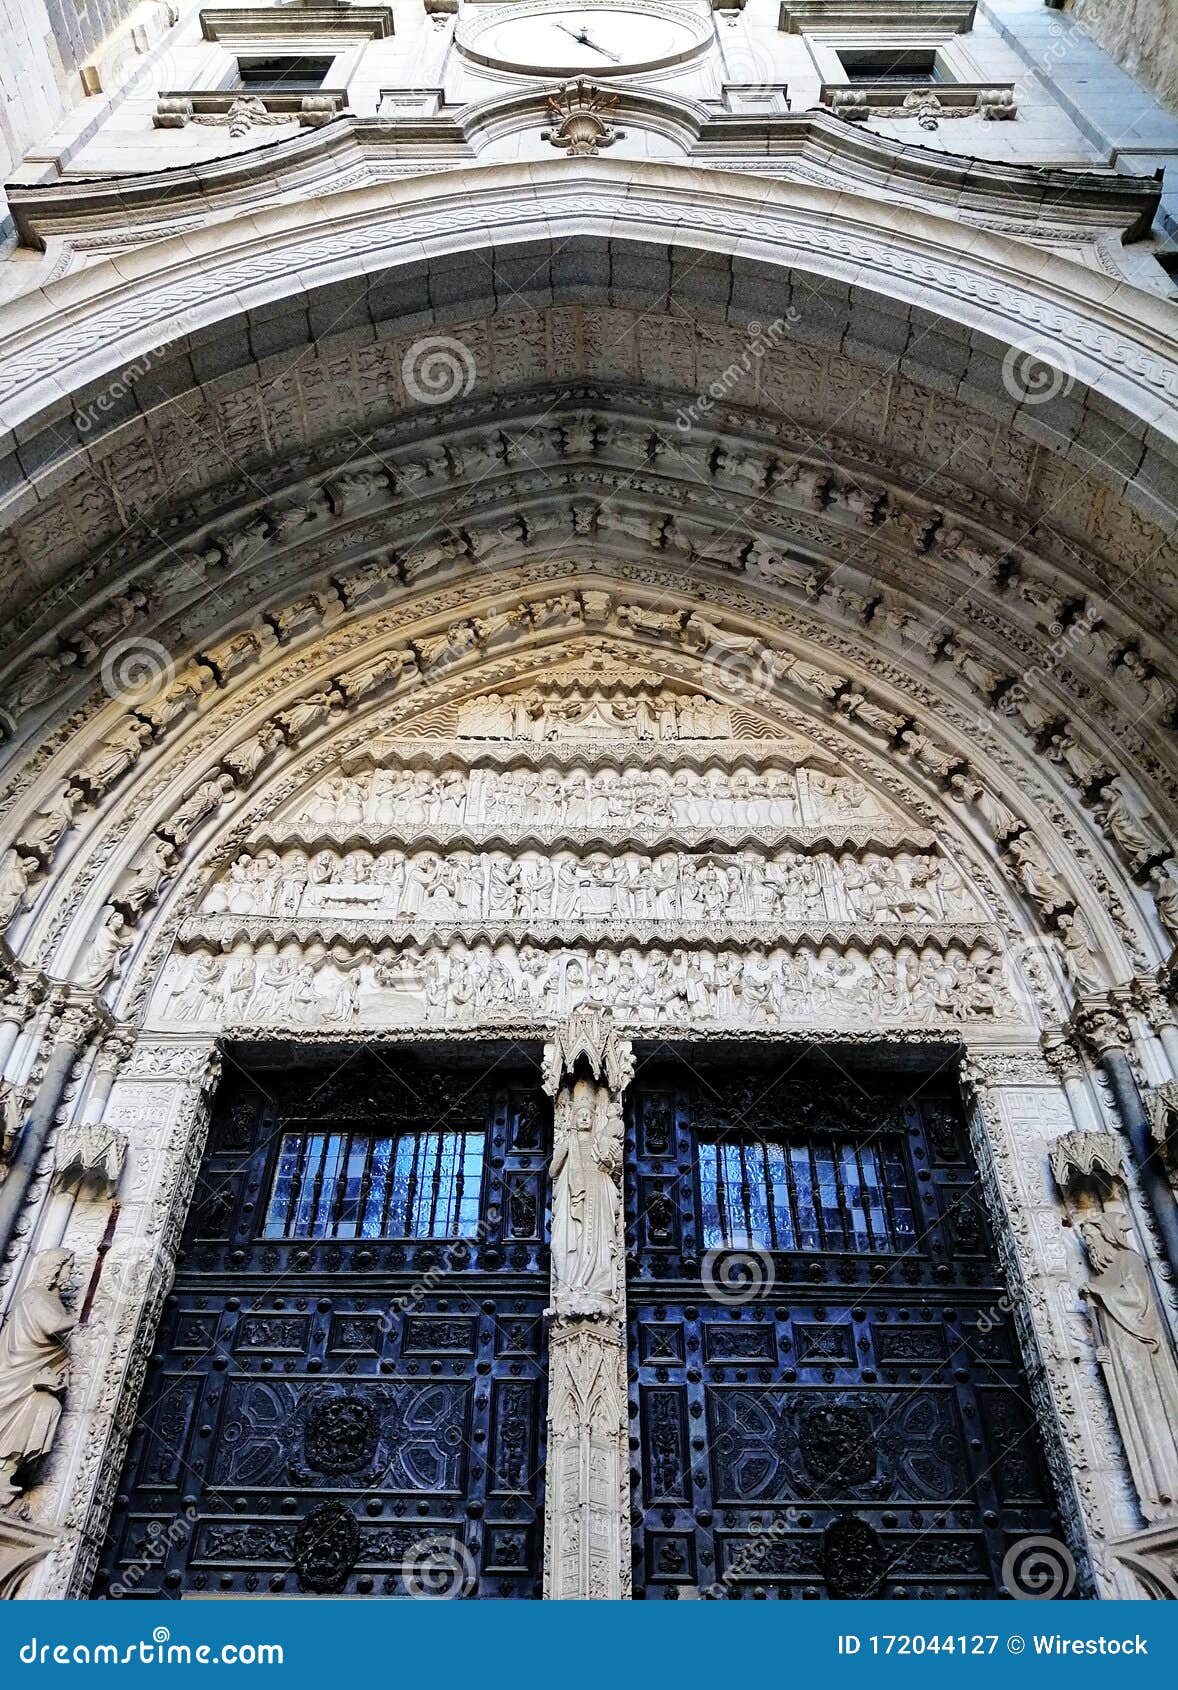 vertical shot of santa iglesia catedral primada de toledo entrance in toledo, spain